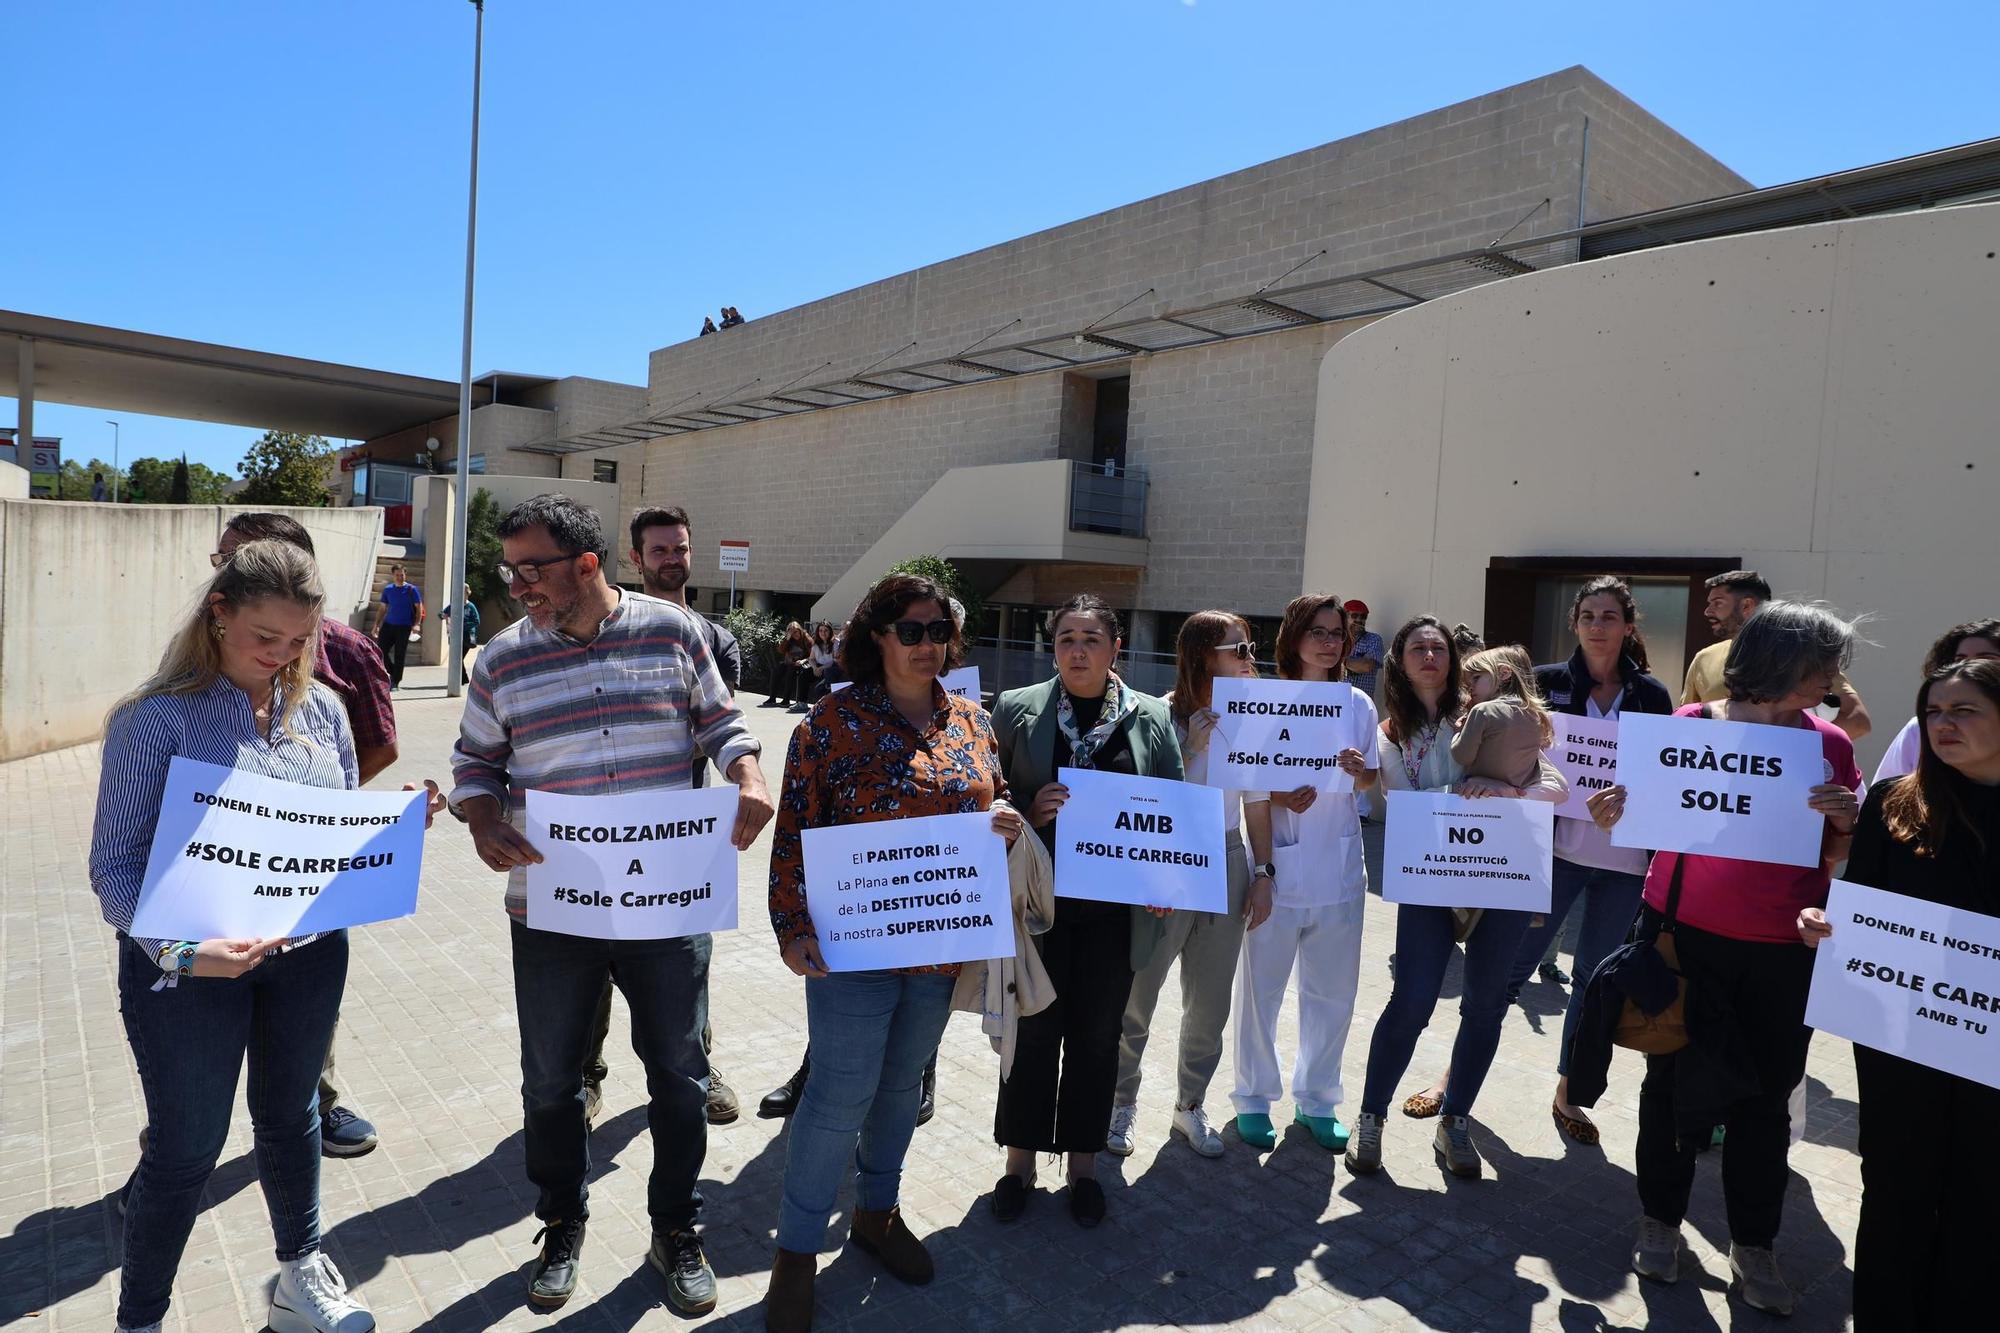 Las imágenes de la concentración en apoyo a la supervisora de matronas del Hospital de la Plana, destituida por Sanitat